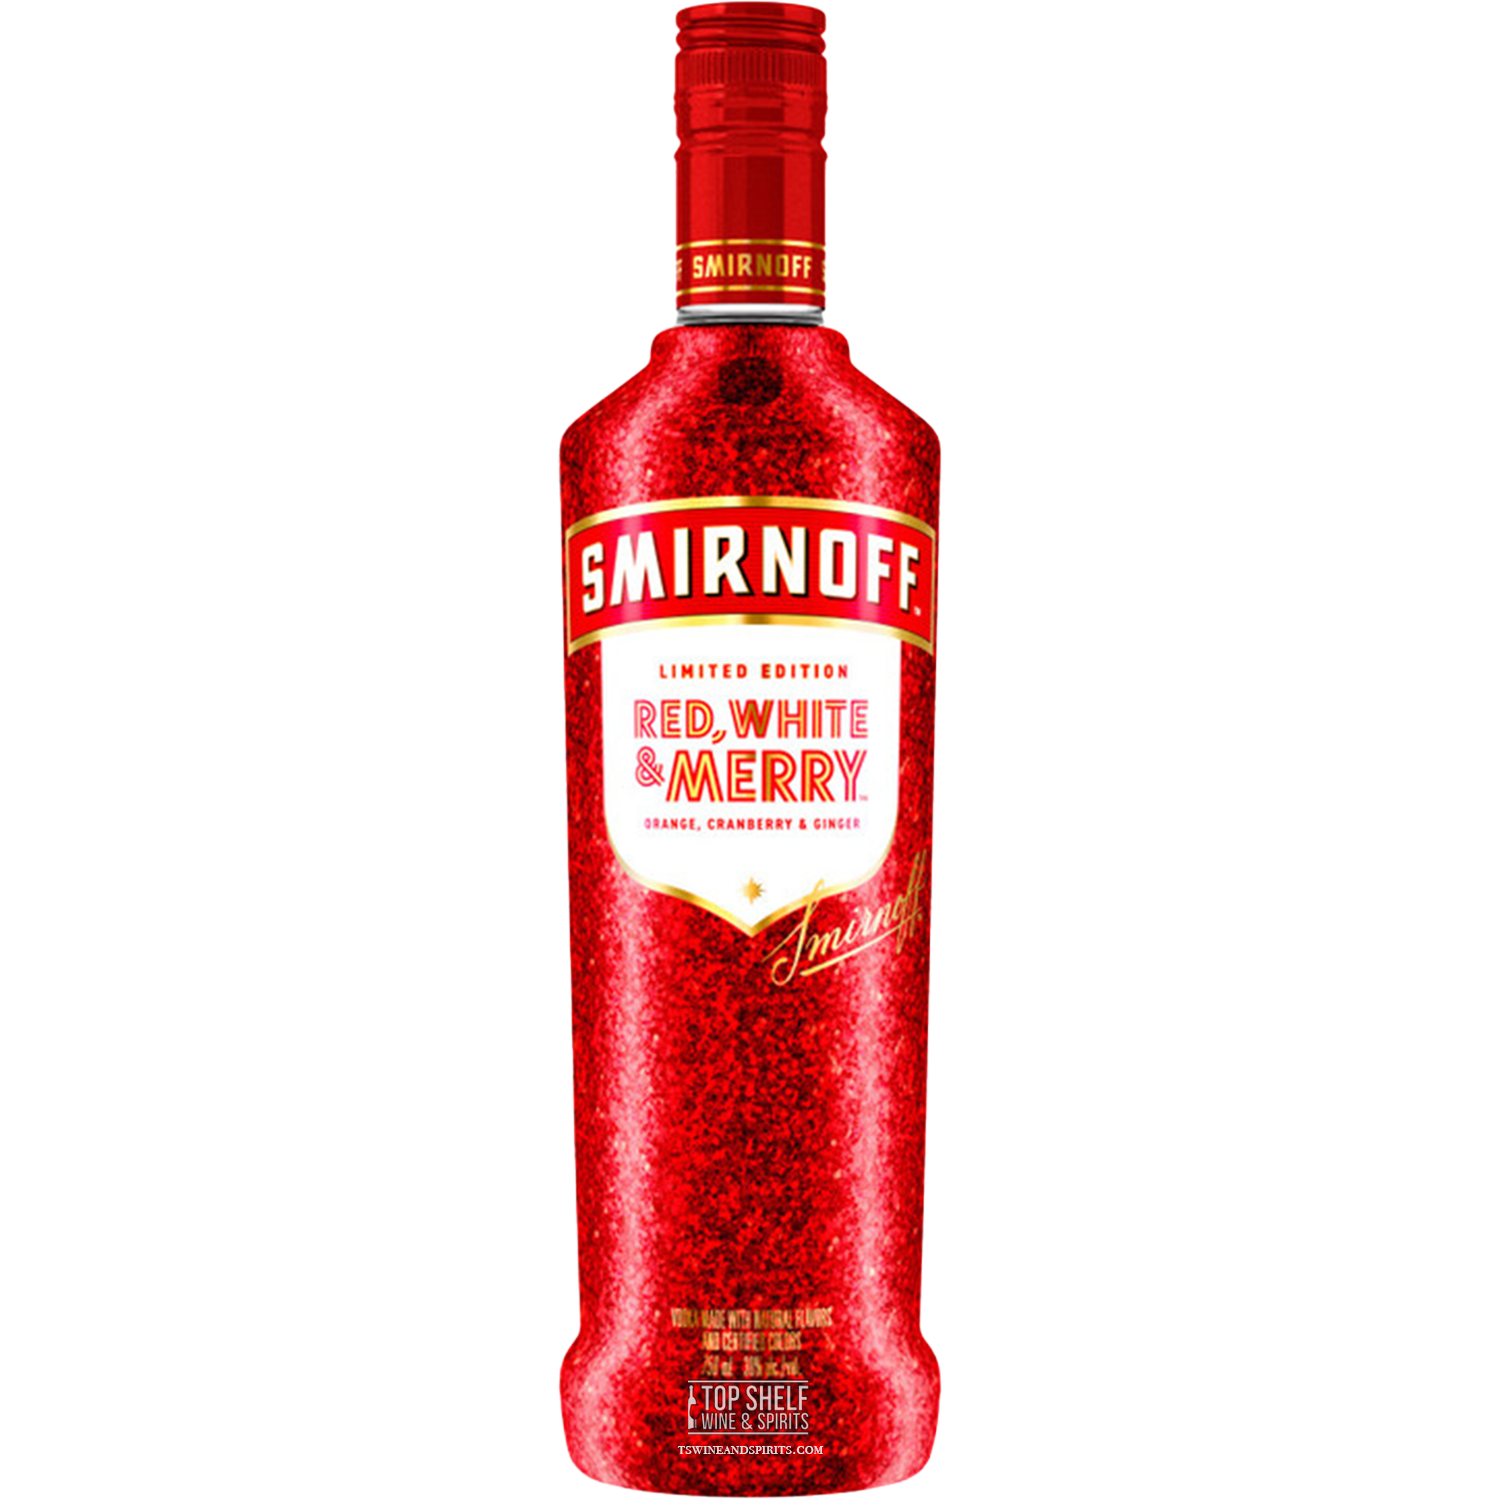 Smirnoff Red White & Merry Vodka